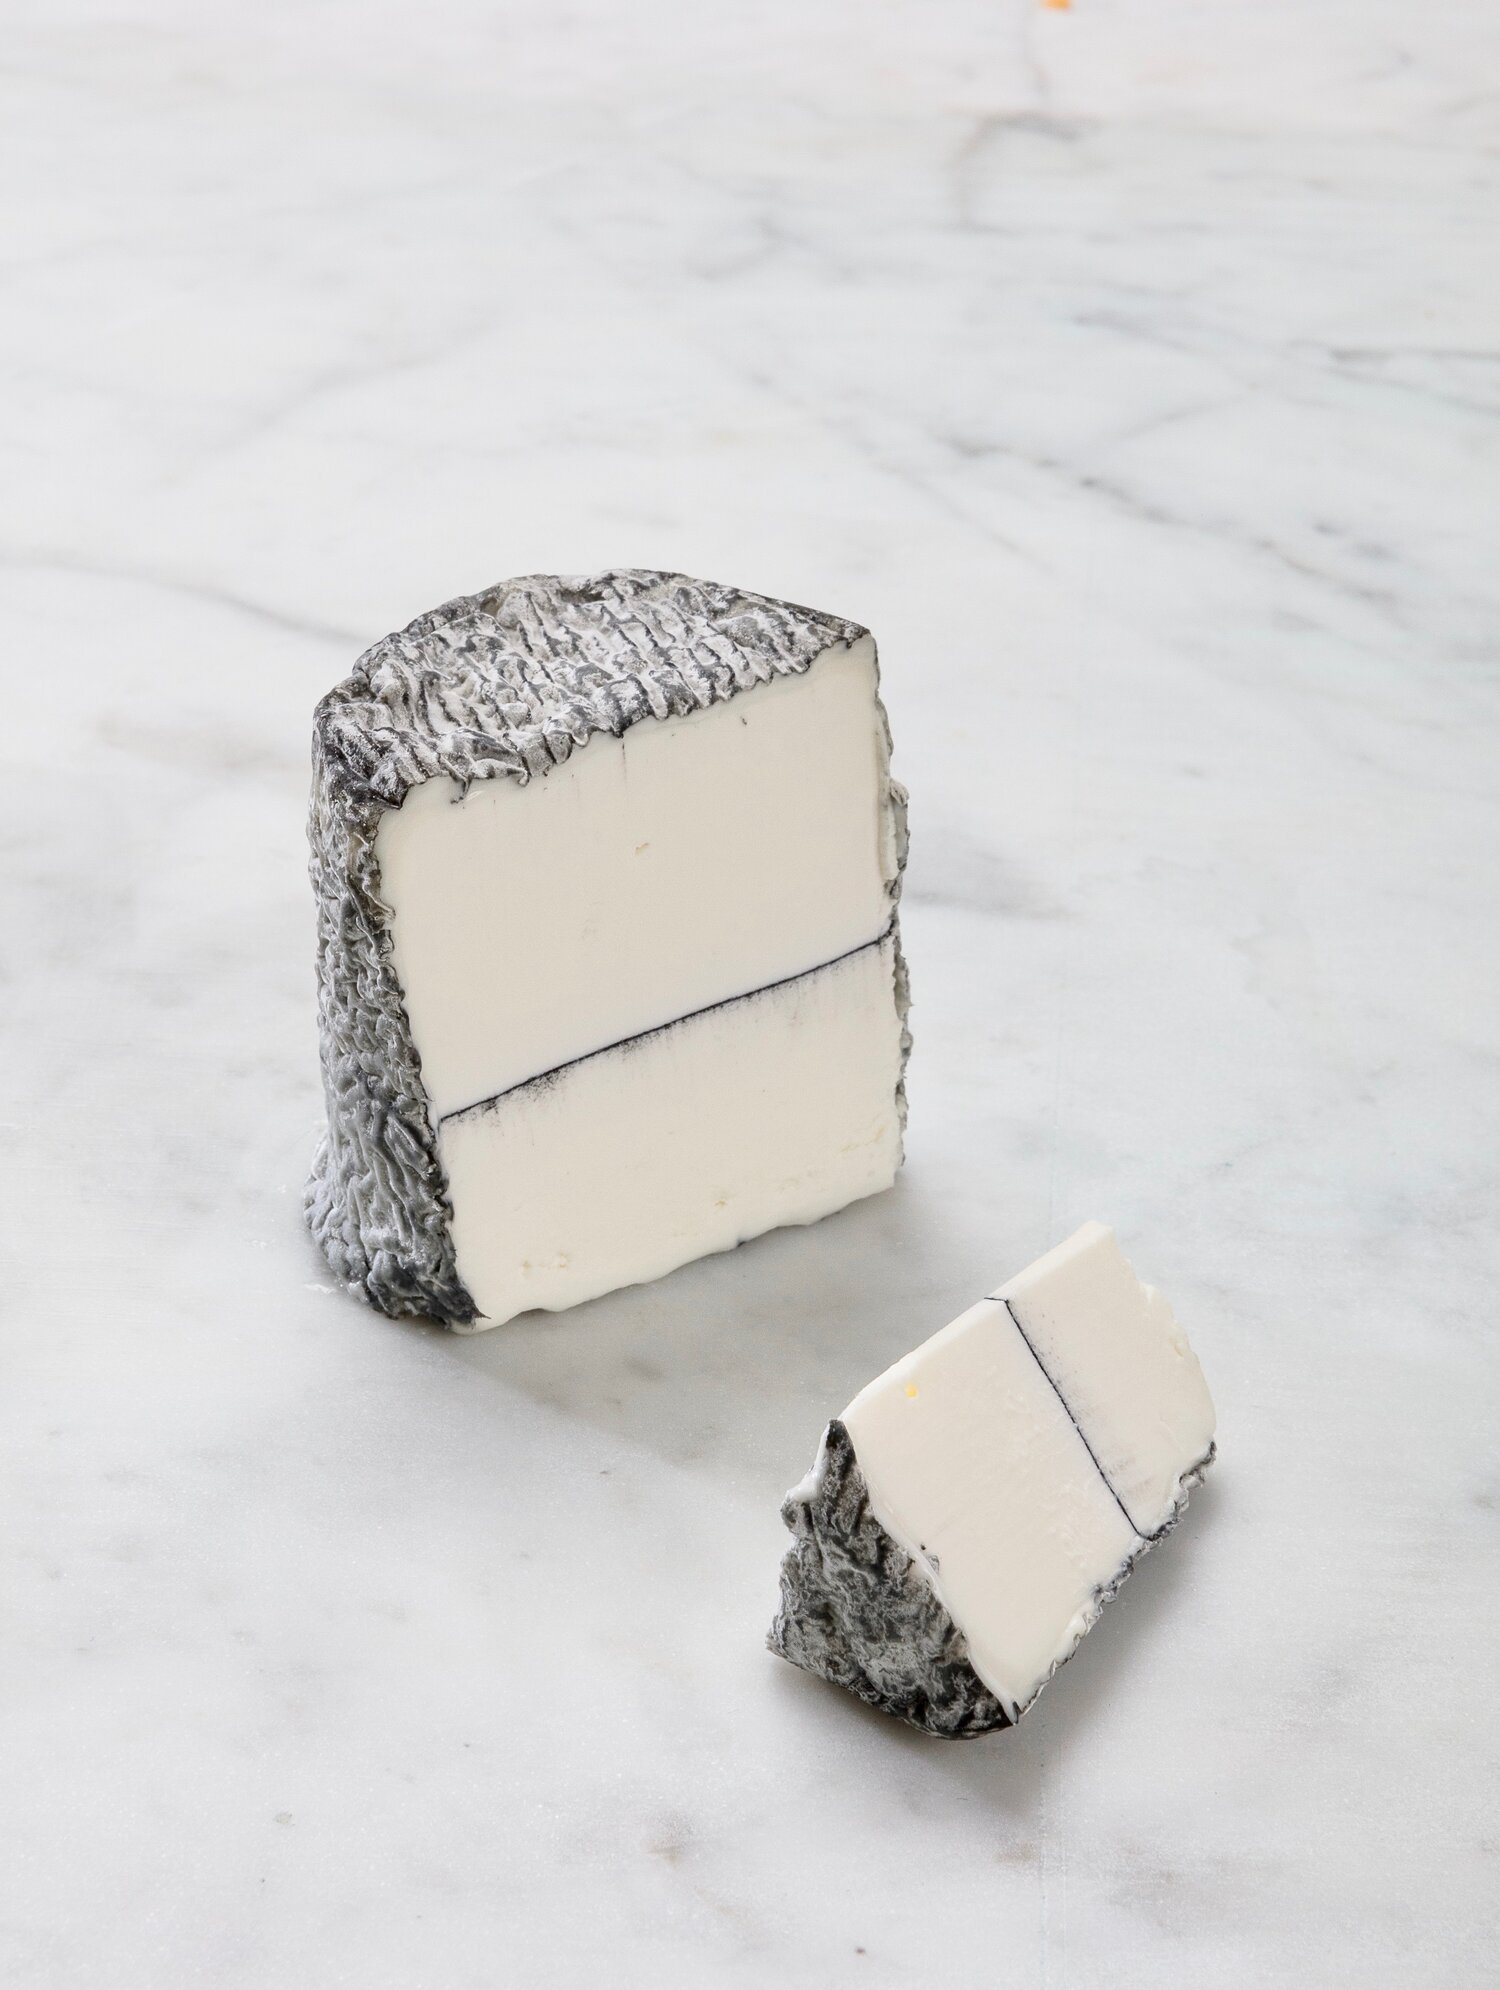 Ashlynn - A Soft Creamy Goat's Cheese, Coated in Ash 200g